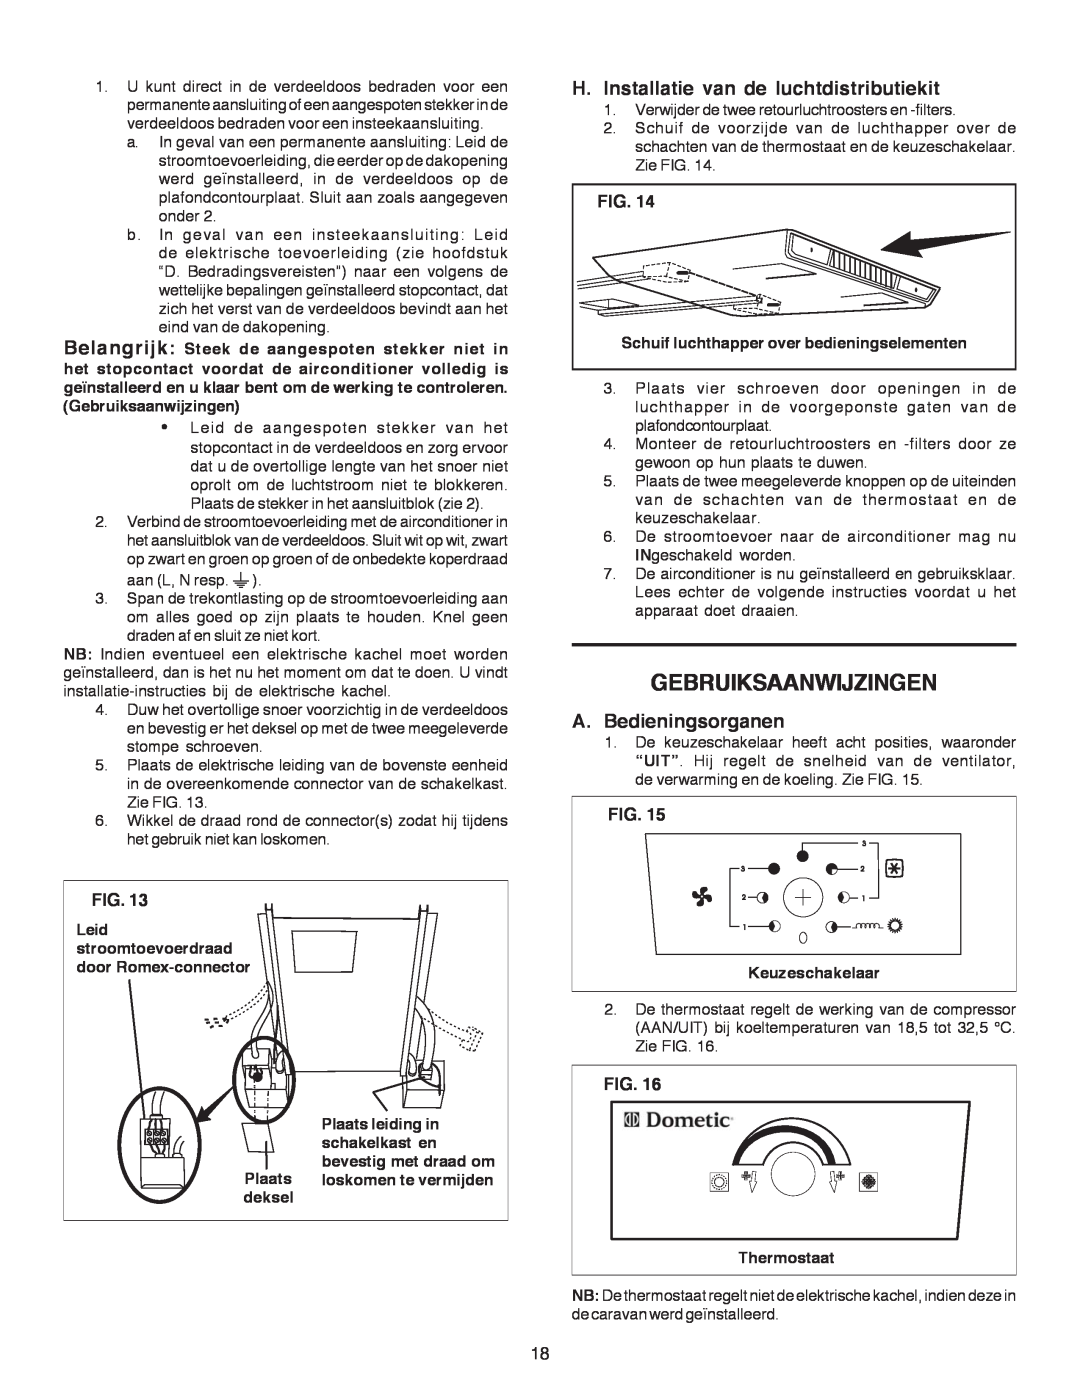 Dometic B3200 manual Gebruiksaanwijzingen, H.Installatie van de luchtdistributiekit, A.Bedieningsorganen, Fig 